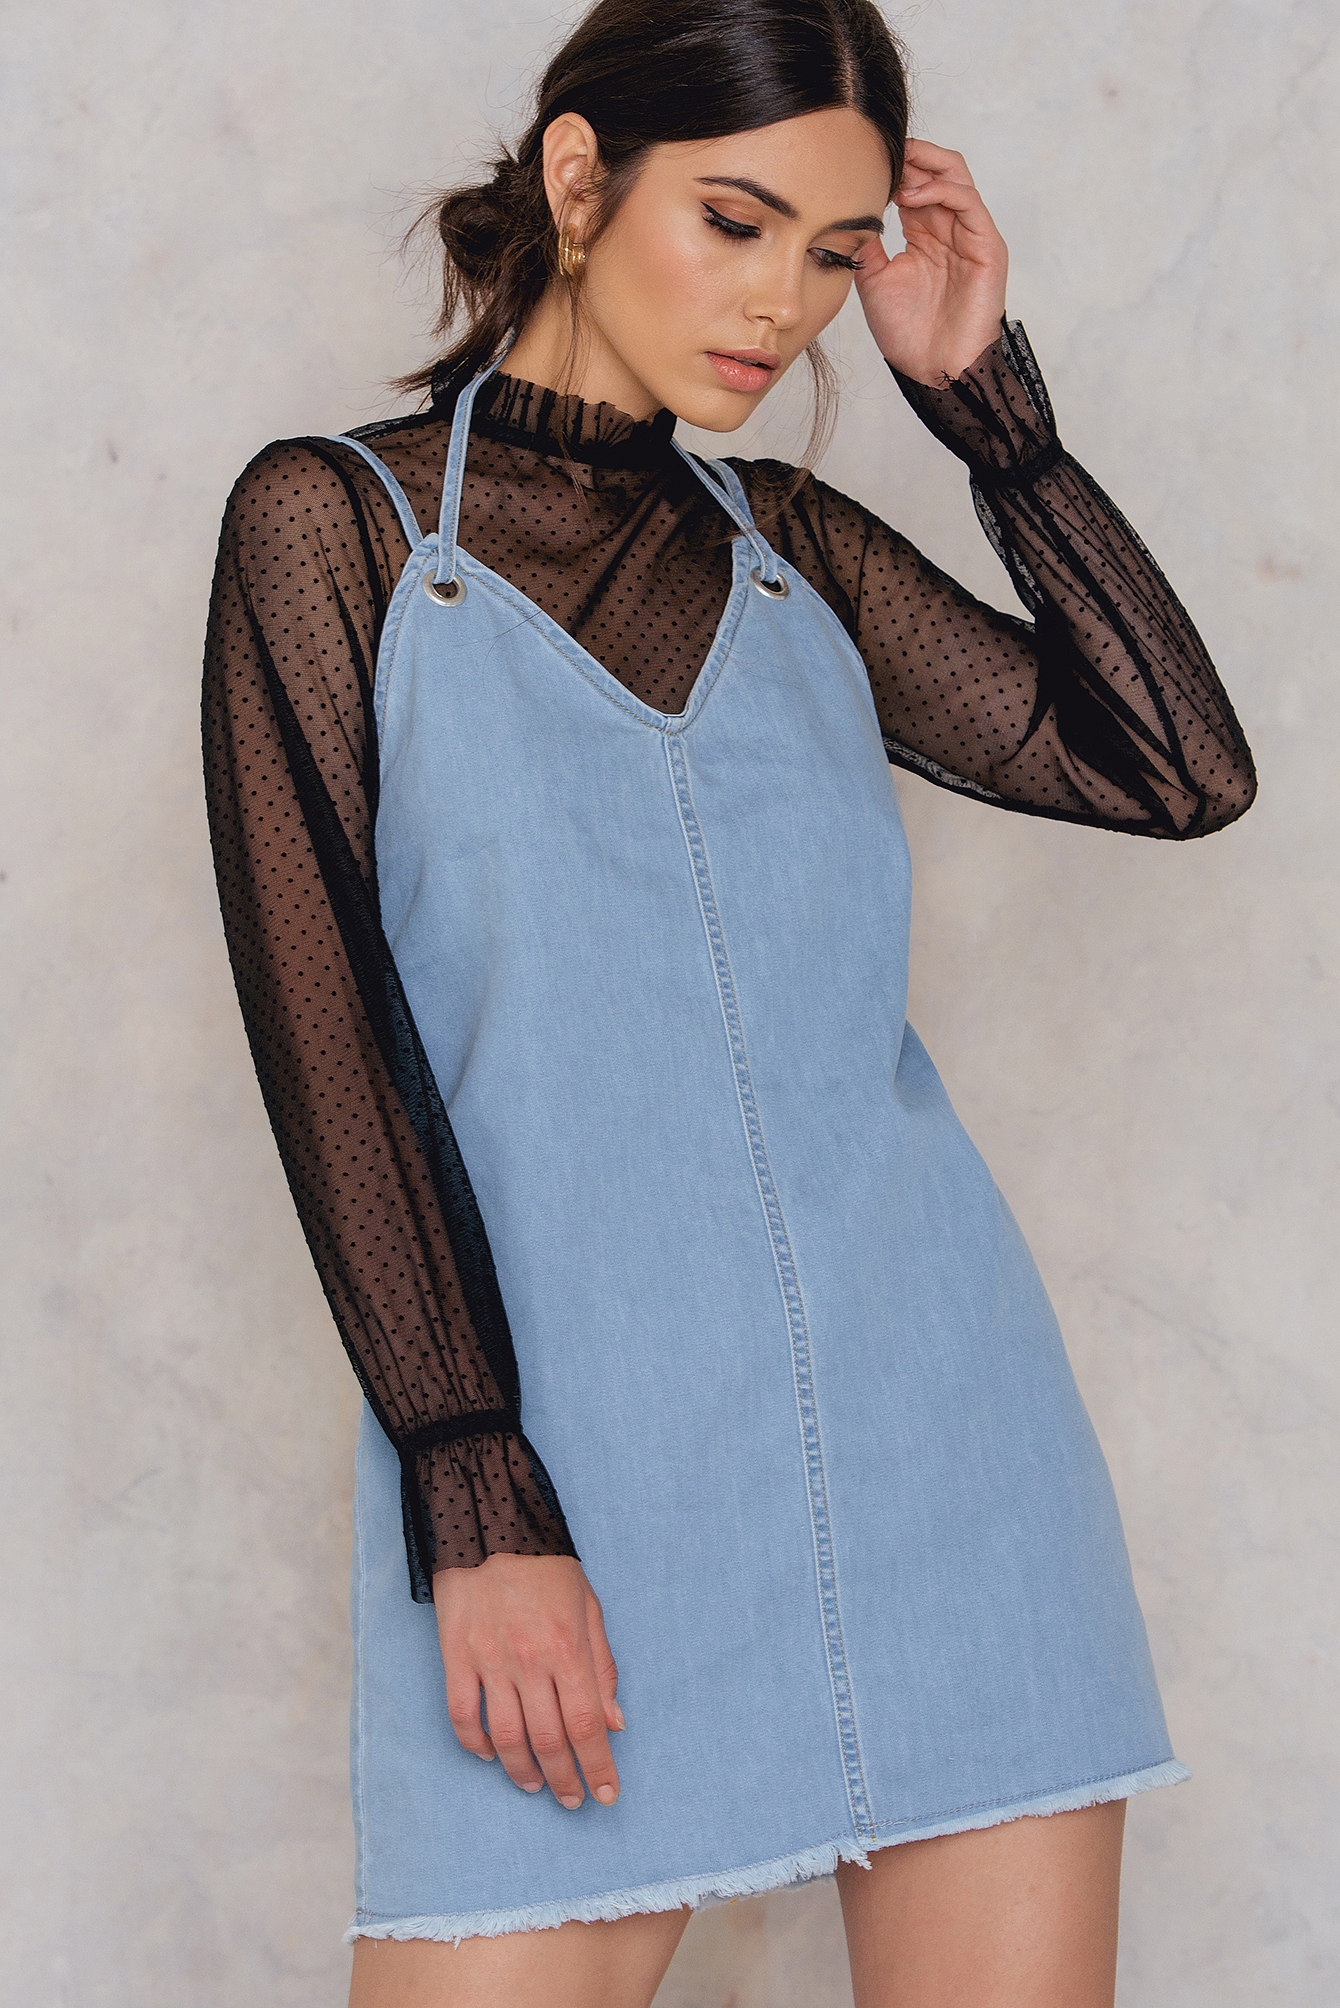 Moda Sukienki Jeansowe sukienki NA-KD Jeansowa sukienka niebieski Wygl\u0105d w stylu miejskim 